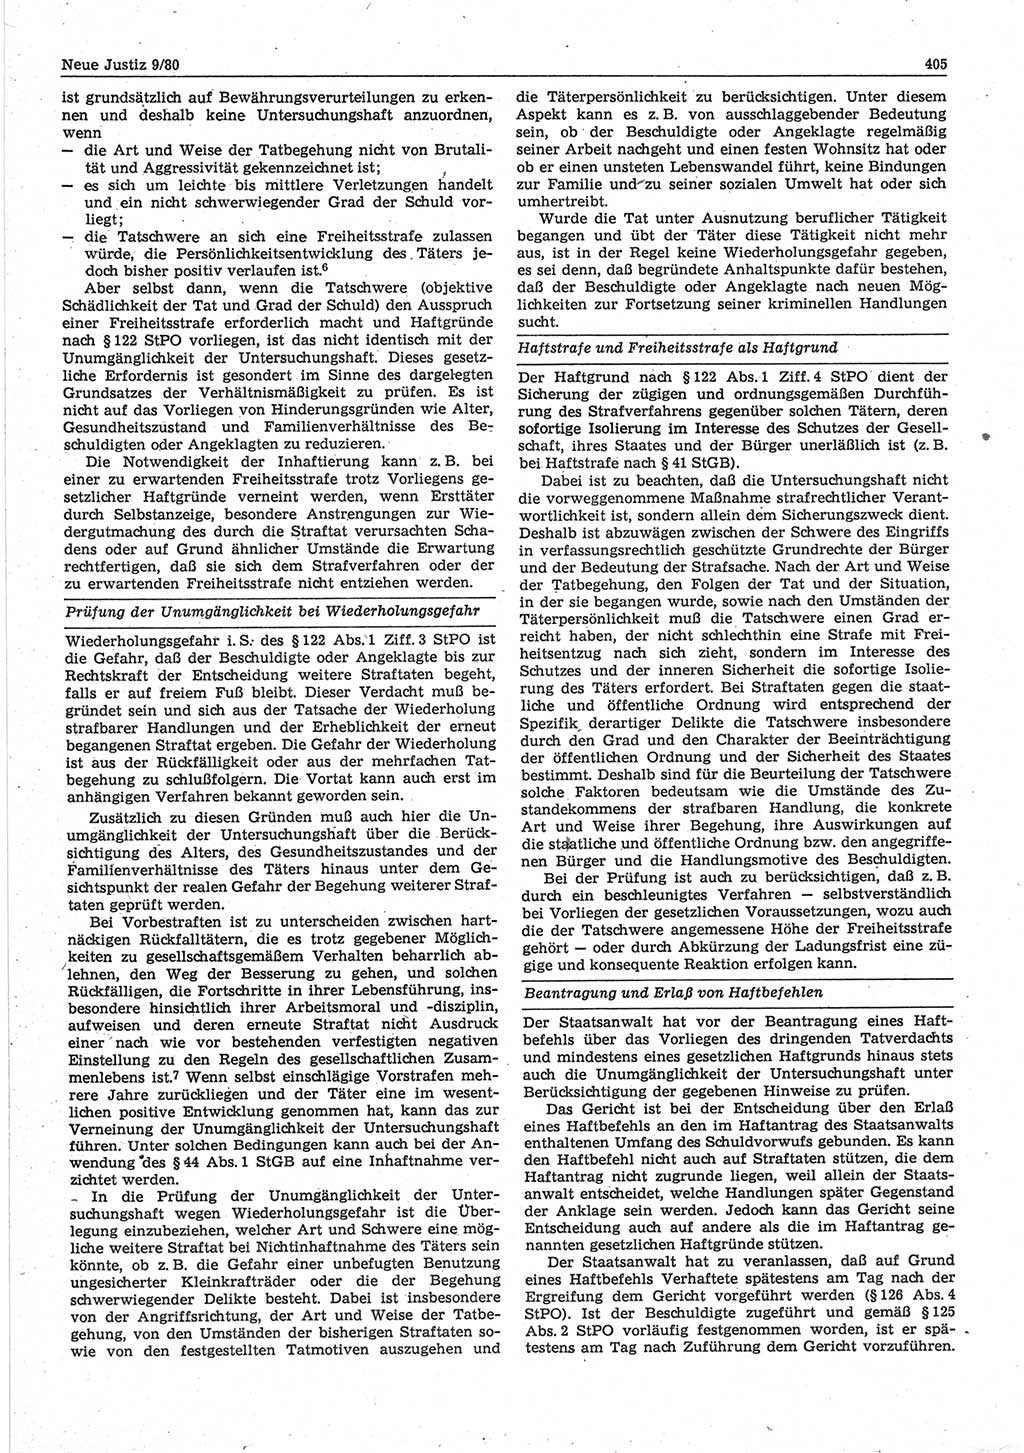 Neue Justiz (NJ), Zeitschrift für sozialistisches Recht und Gesetzlichkeit [Deutsche Demokratische Republik (DDR)], 34. Jahrgang 1980, Seite 405 (NJ DDR 1980, S. 405)